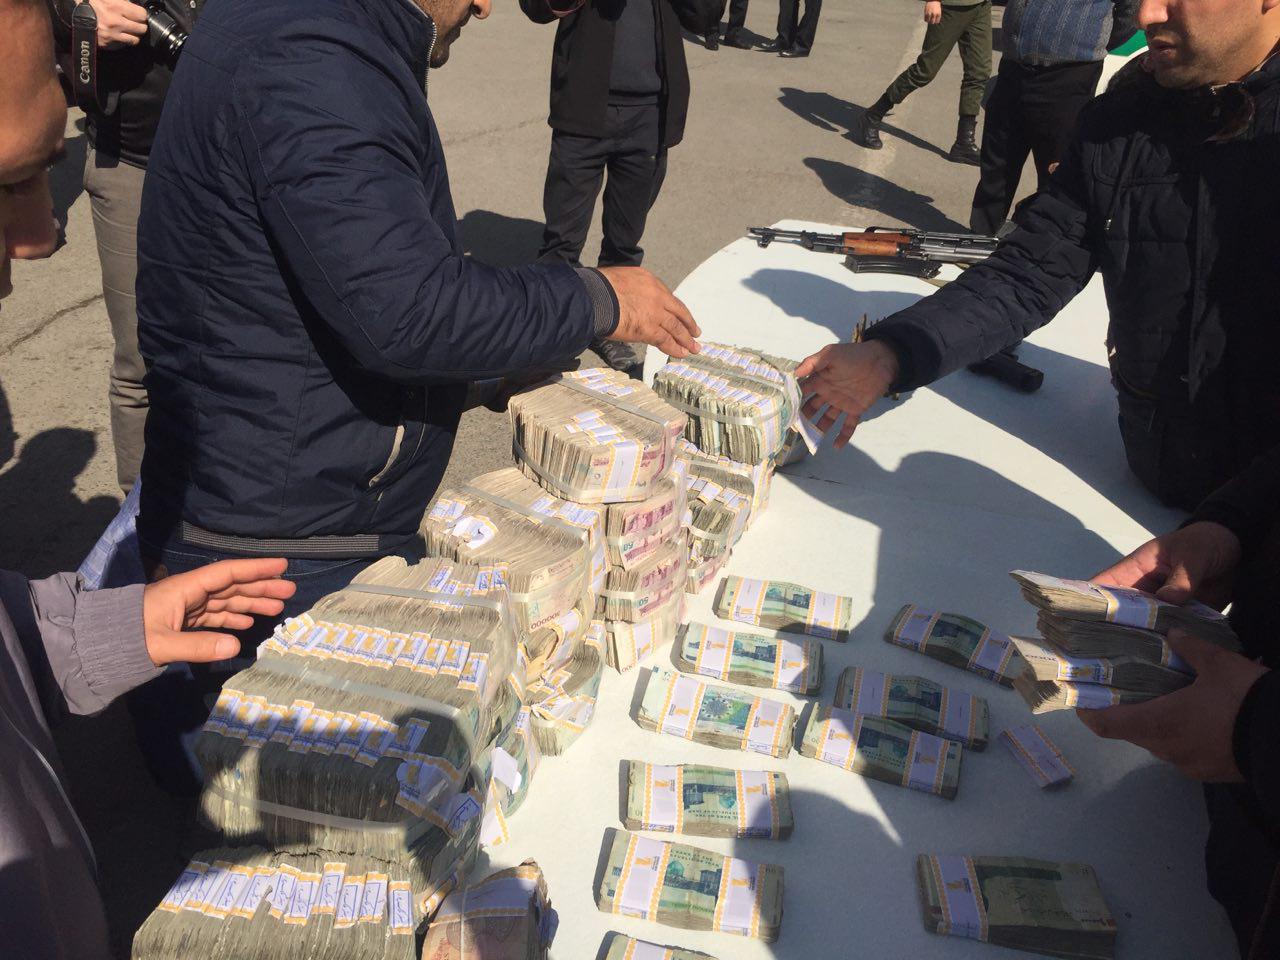 سارقان خودروی حمل پول بانک پاسارگاد دستگیر شدند/ یک زن در میان سارقان (+عکس)